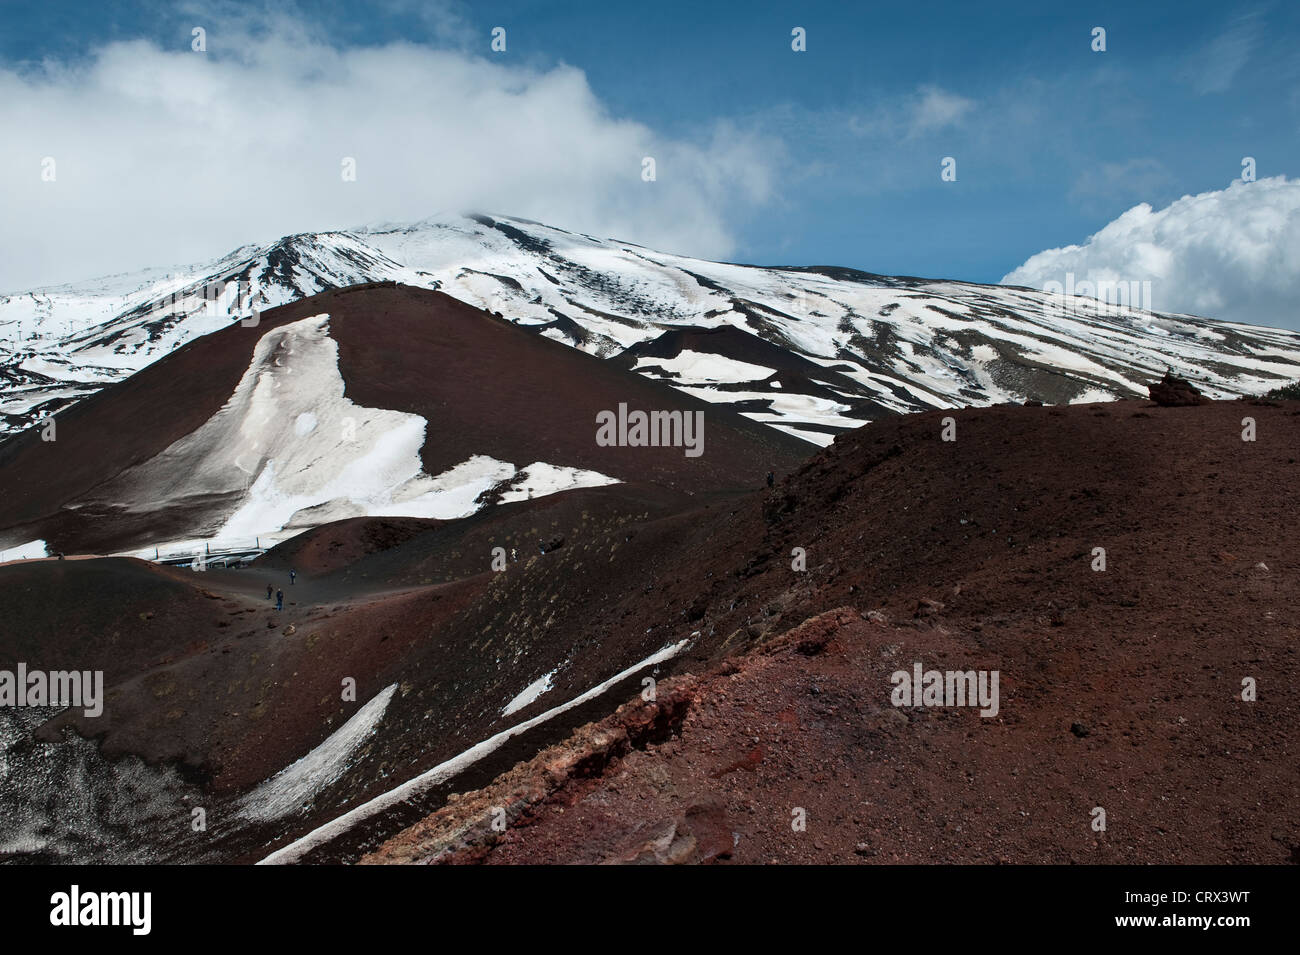 Vista del Monte Etna, Sicilia, Italia vista desde los cráteres de Sivestri a 1900m cerca del Rifugio Sapienza, mostrando la lava roja rica en hierro Foto de stock